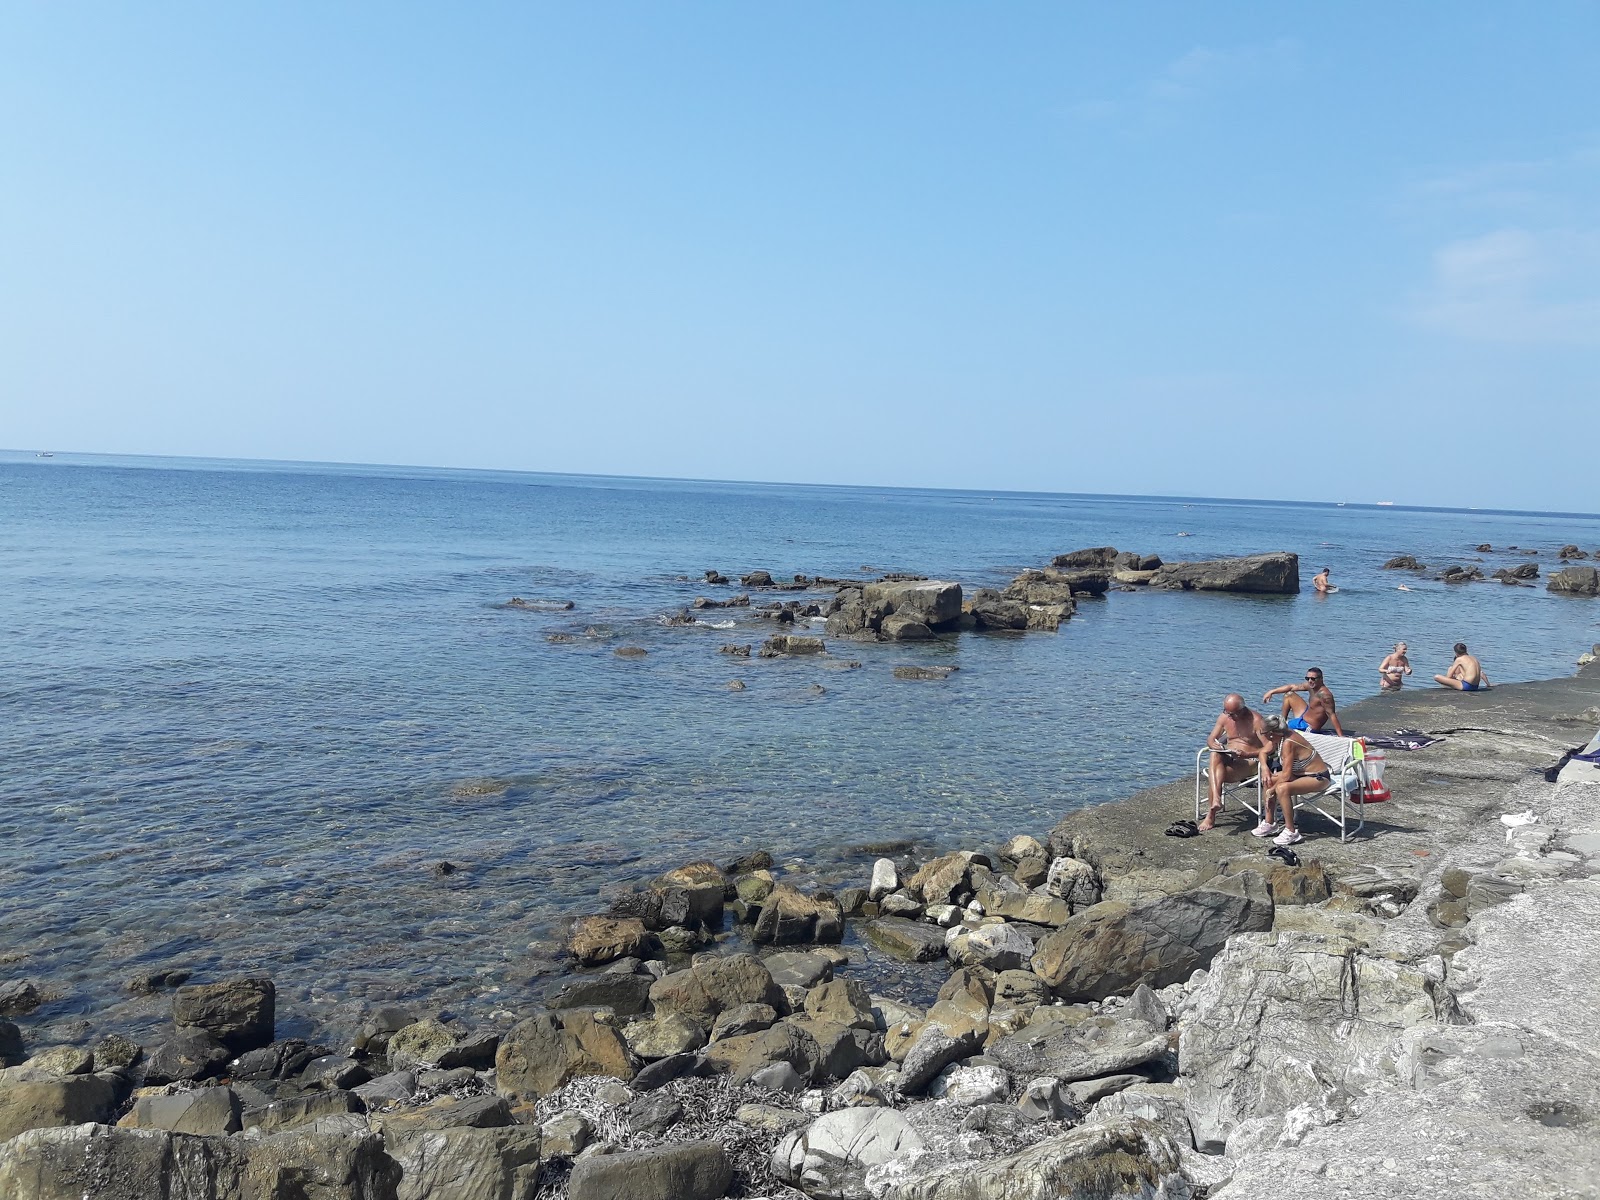 Spiaggia Margherita'in fotoğrafı geniş plaj ile birlikte